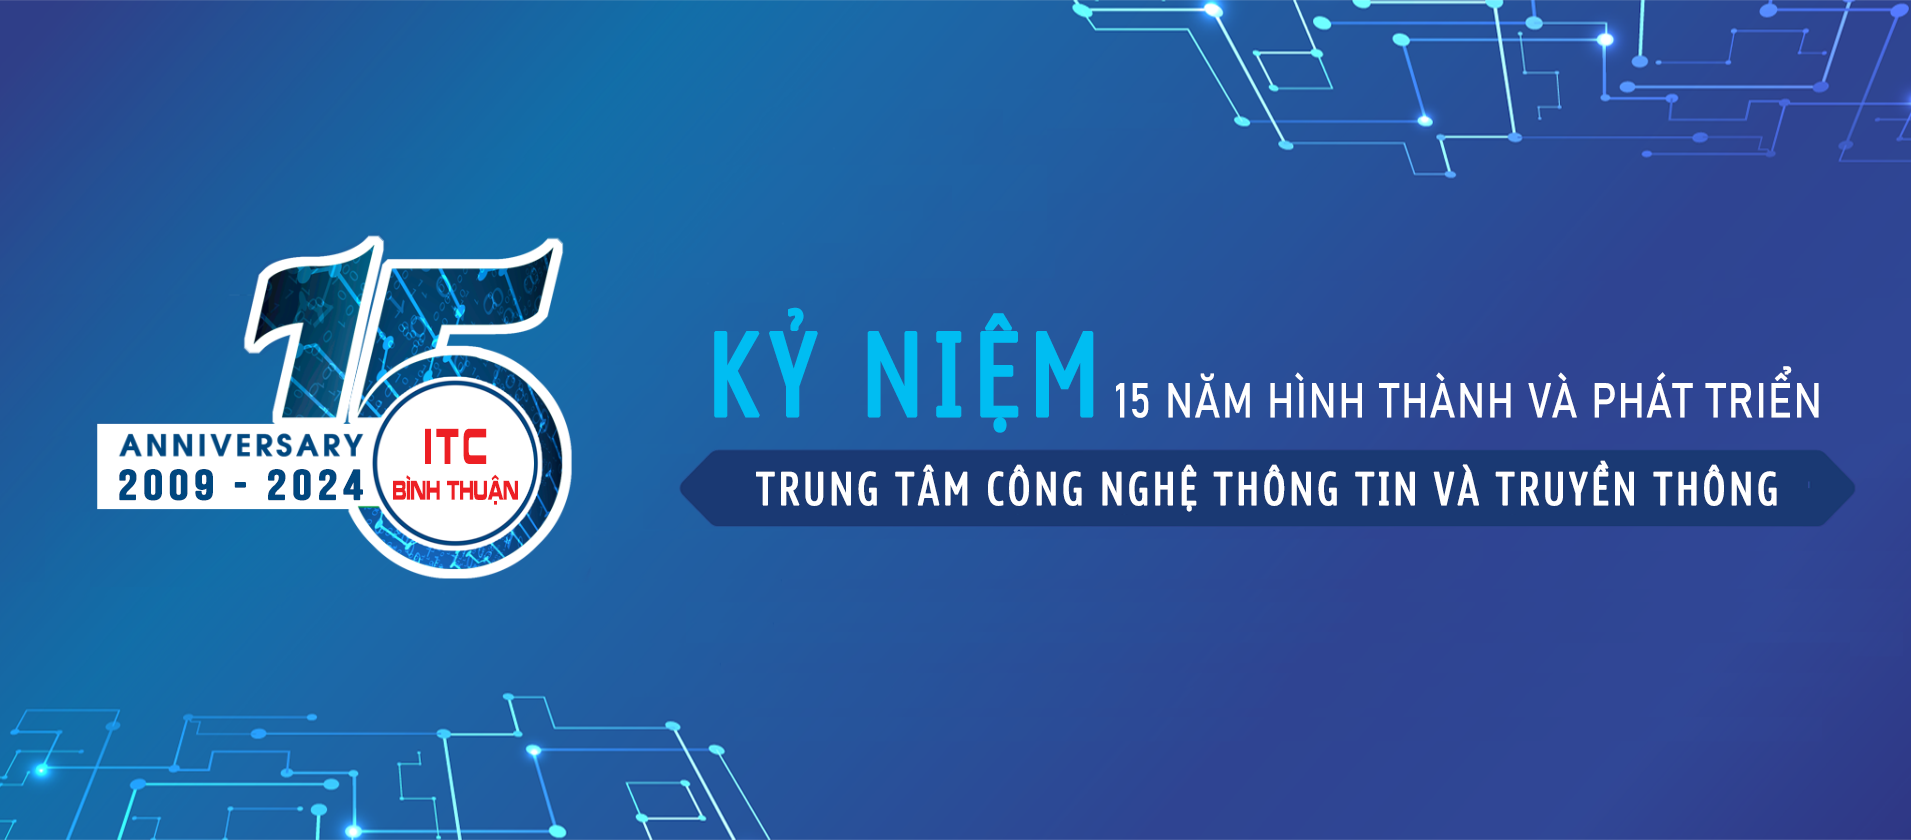 15 Năm ITC Bình Thuận